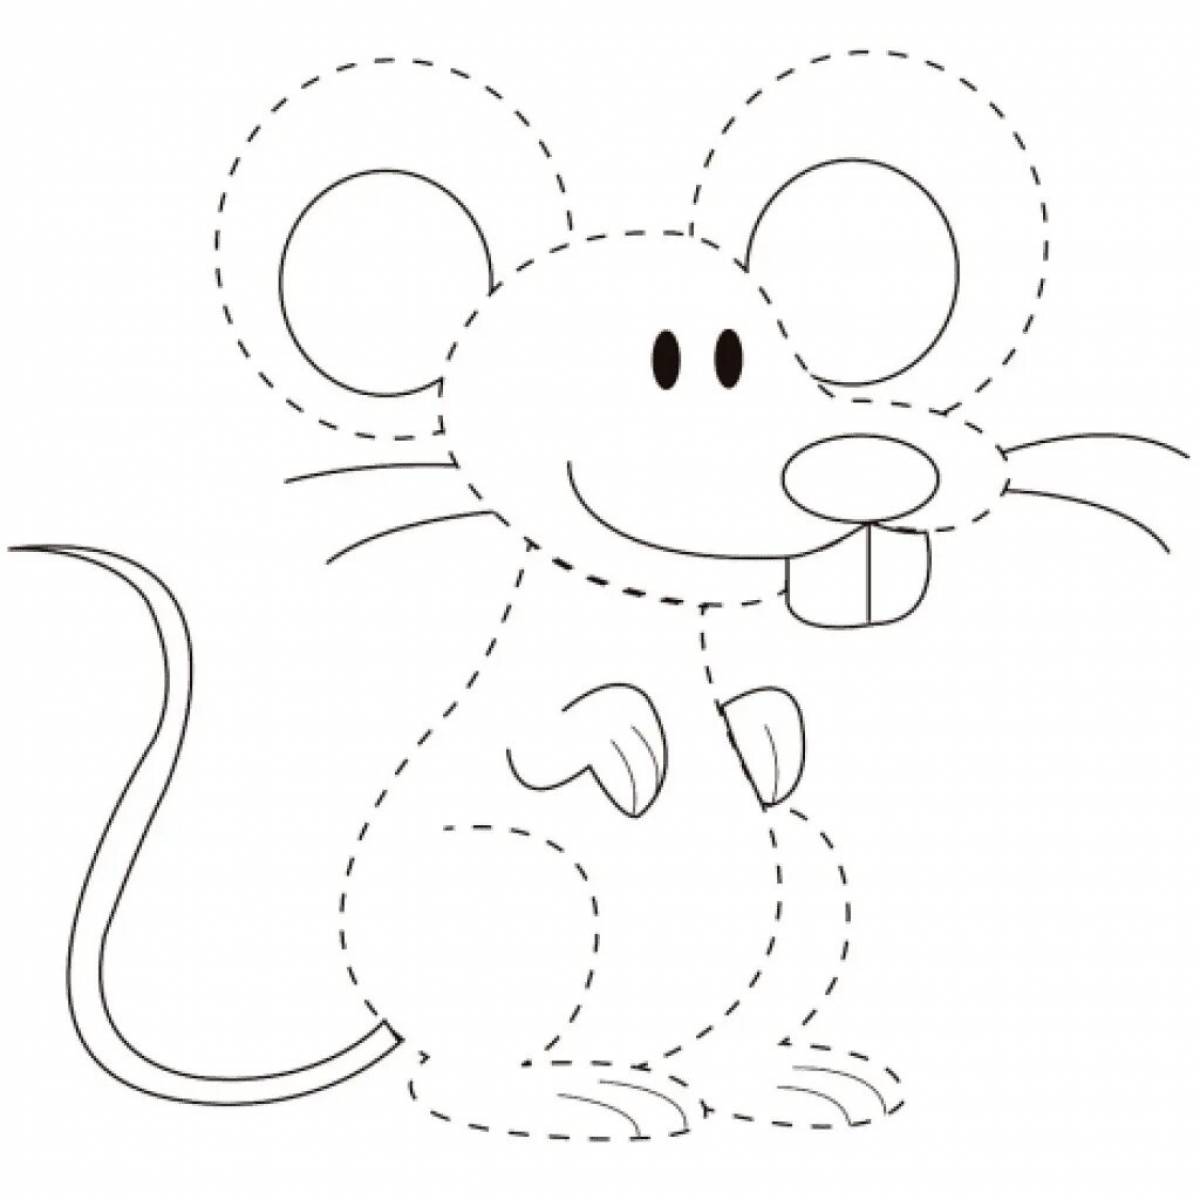 Увлекательная раскраска мышь для детей 3-4 лет